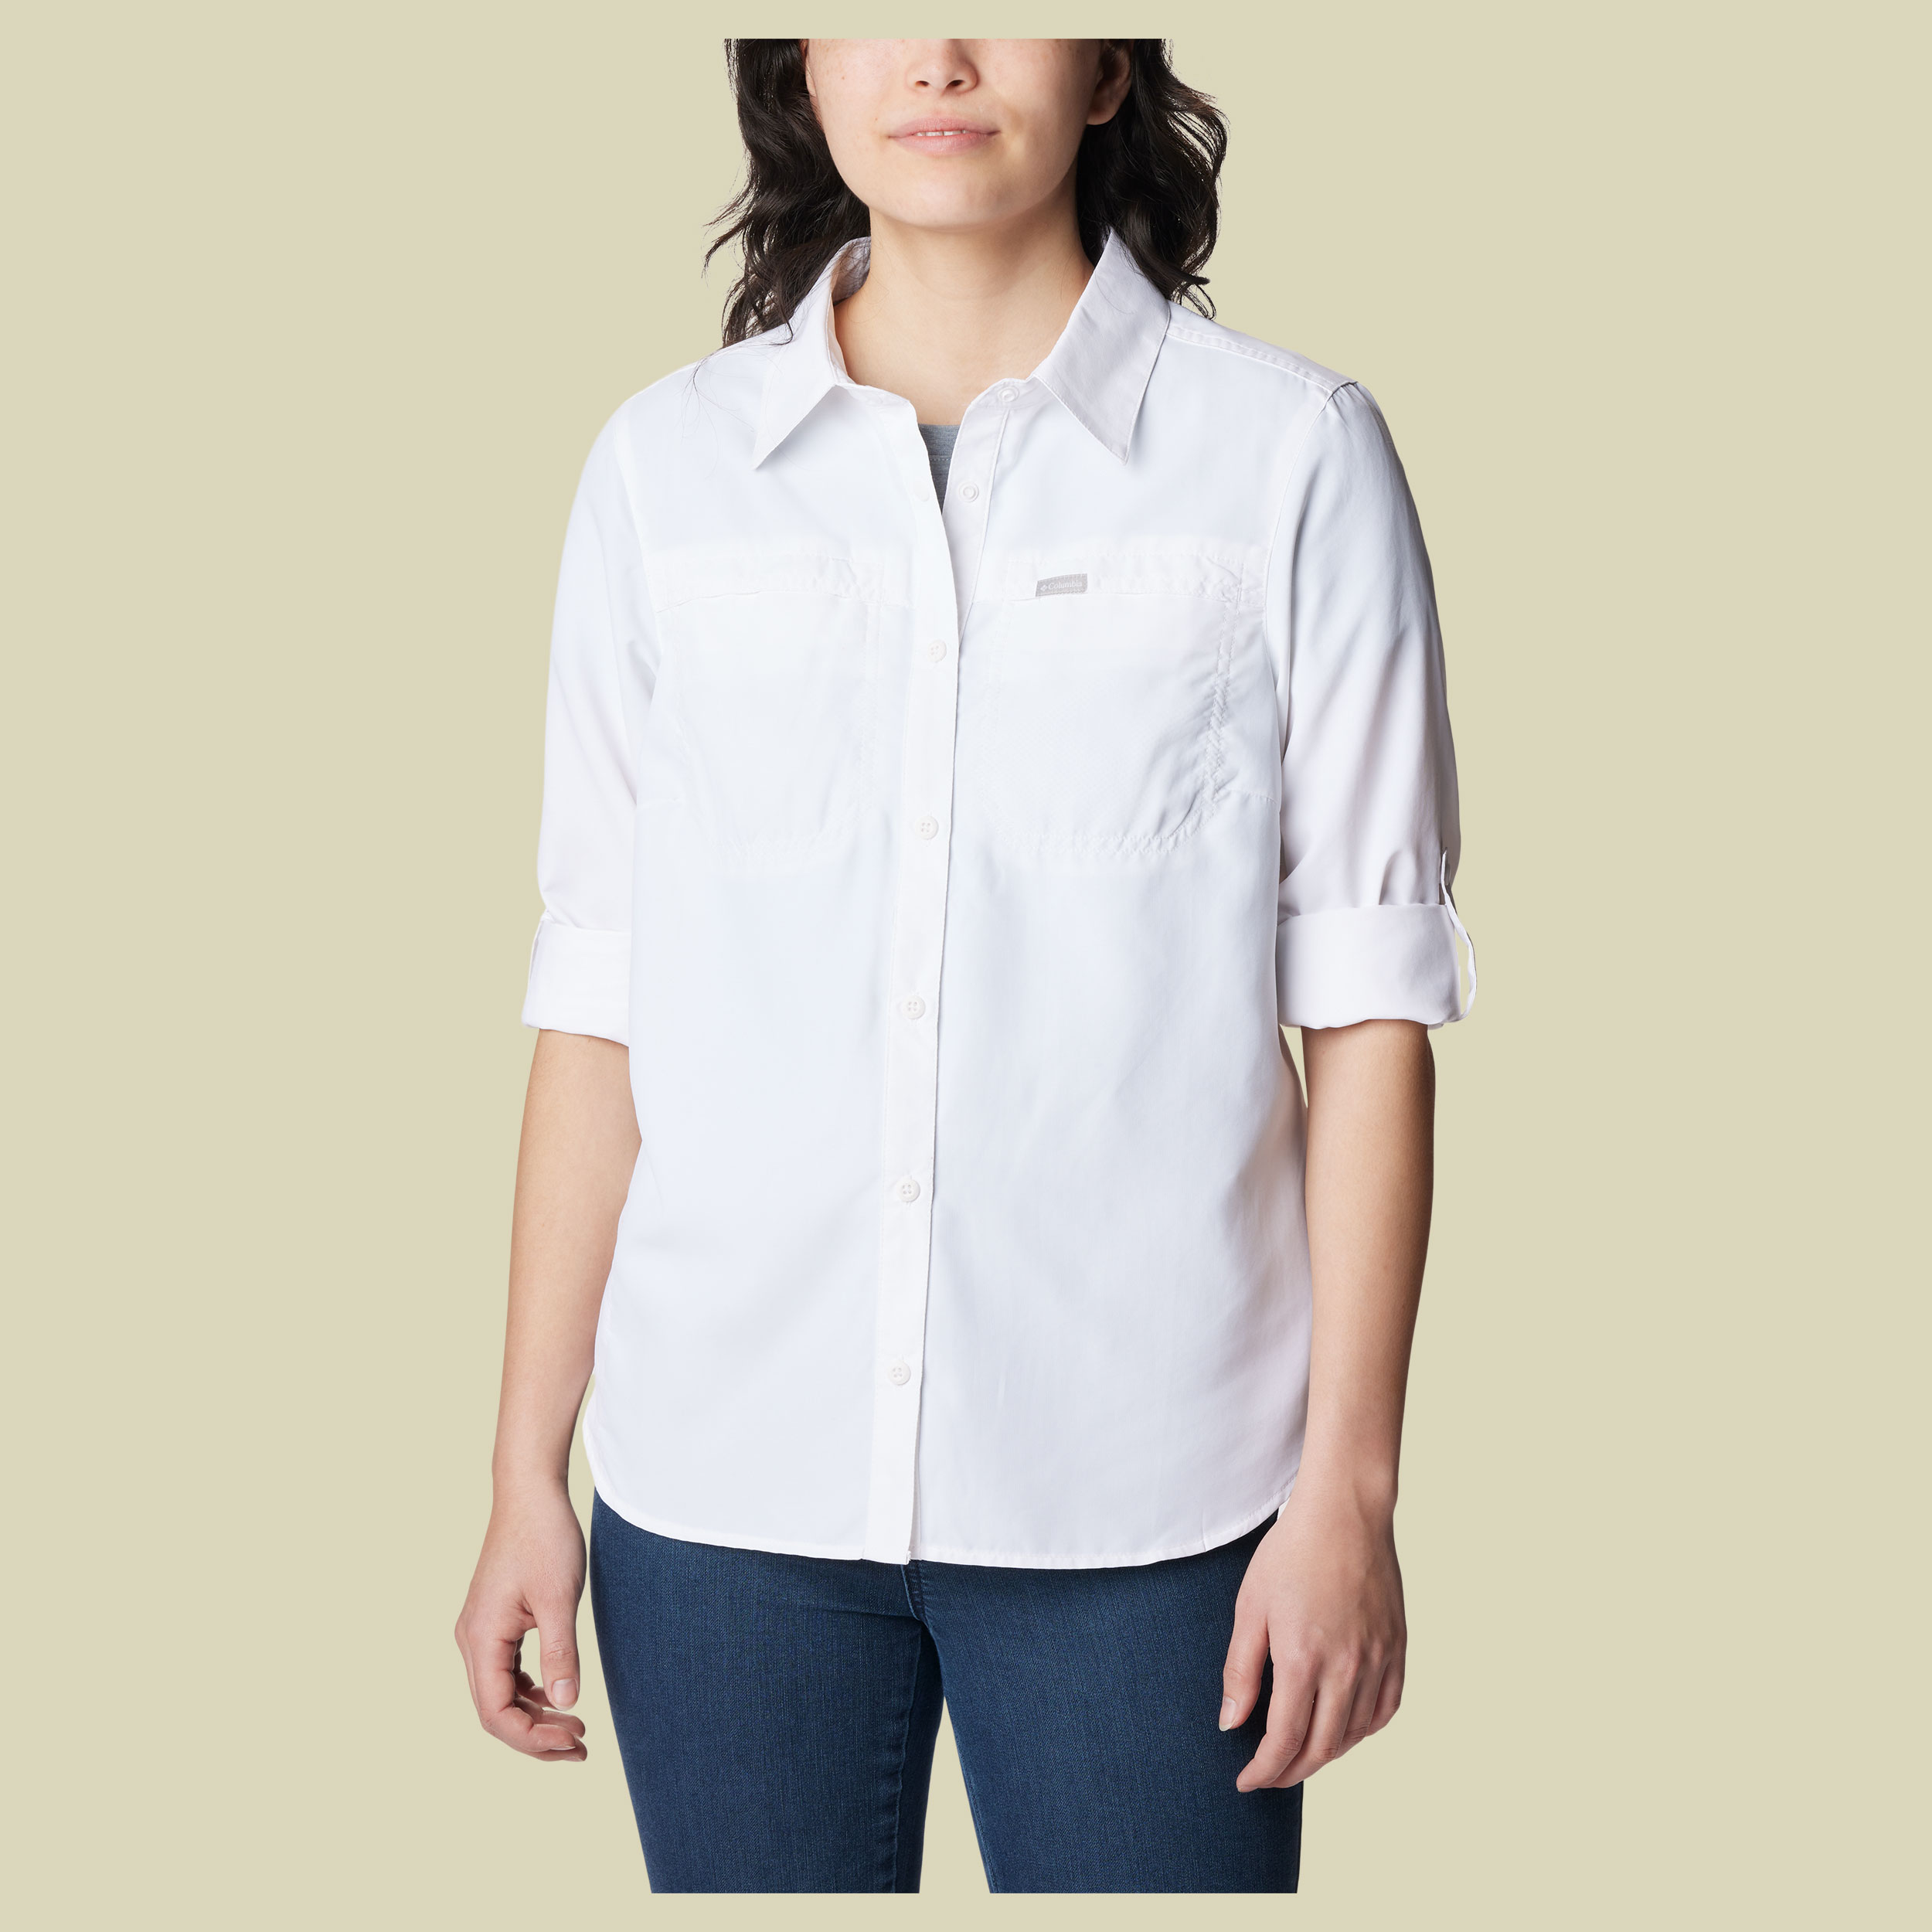 Silver Ridge 3.0 EUR Long Sleeve Shirt Women Größe XL Farbe white